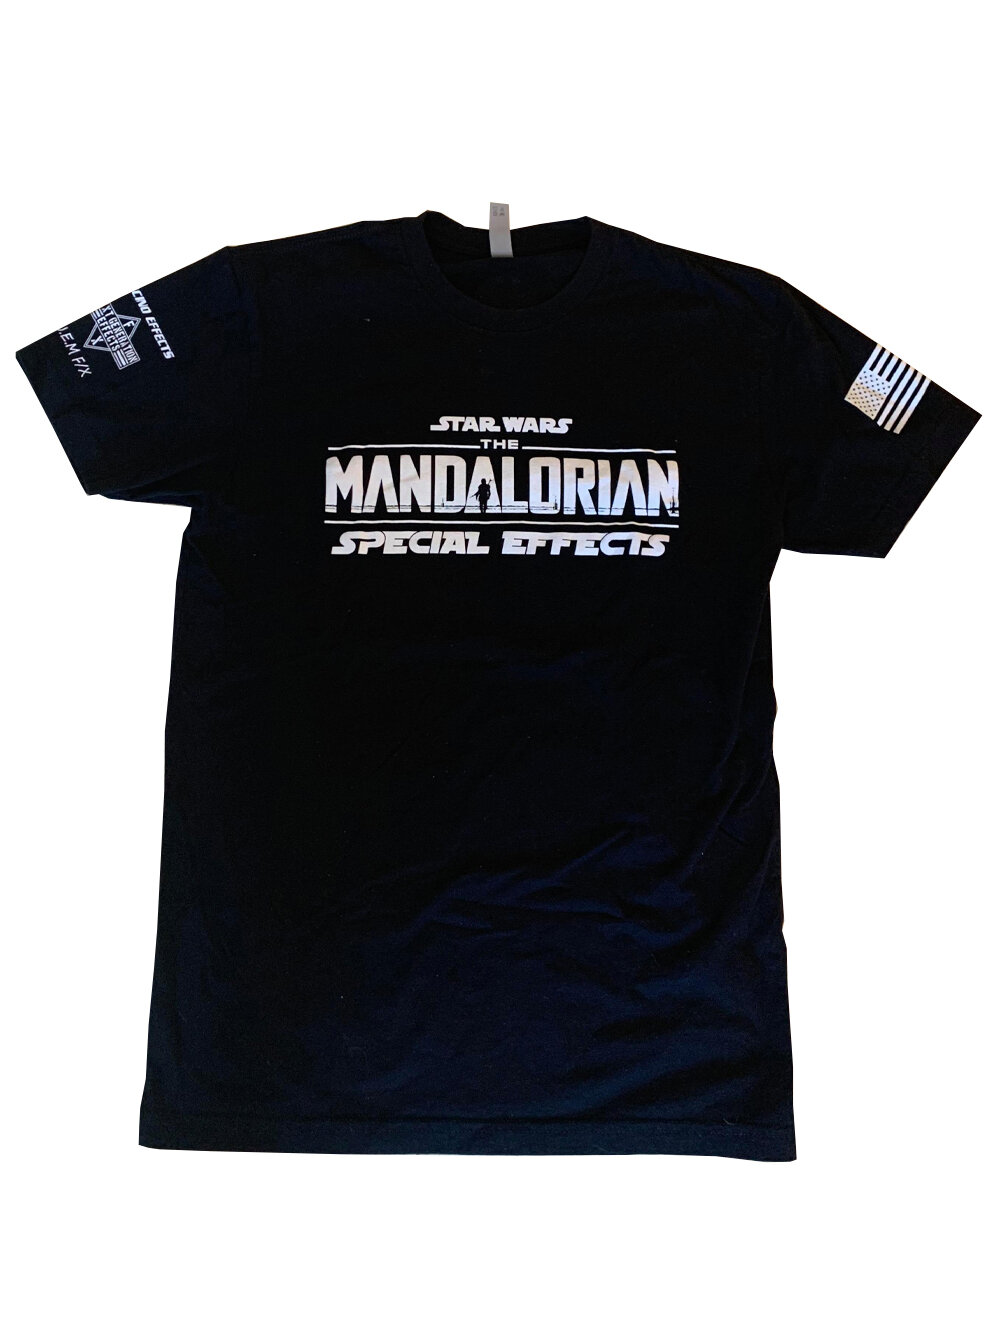 The Mandalorian\